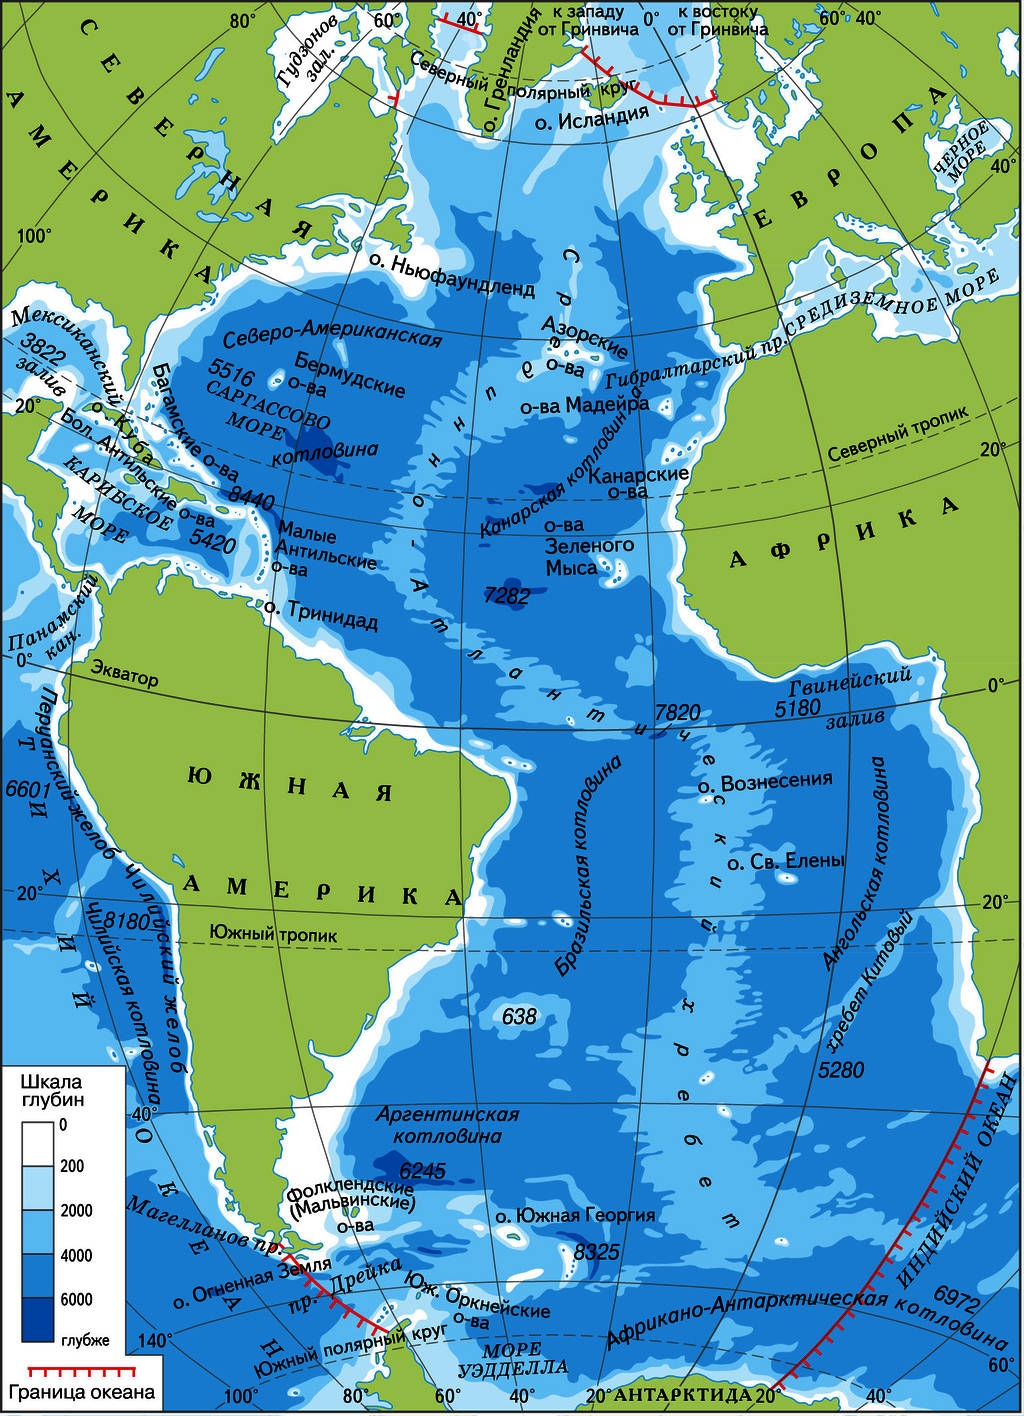 Самое большой залив атлантического океана. Атлантический океан физическая карта. Моря Атлантического океана на карте. Карта Атлантического океана 7 класс атлас. Атлантический океан атлас 7 класс.